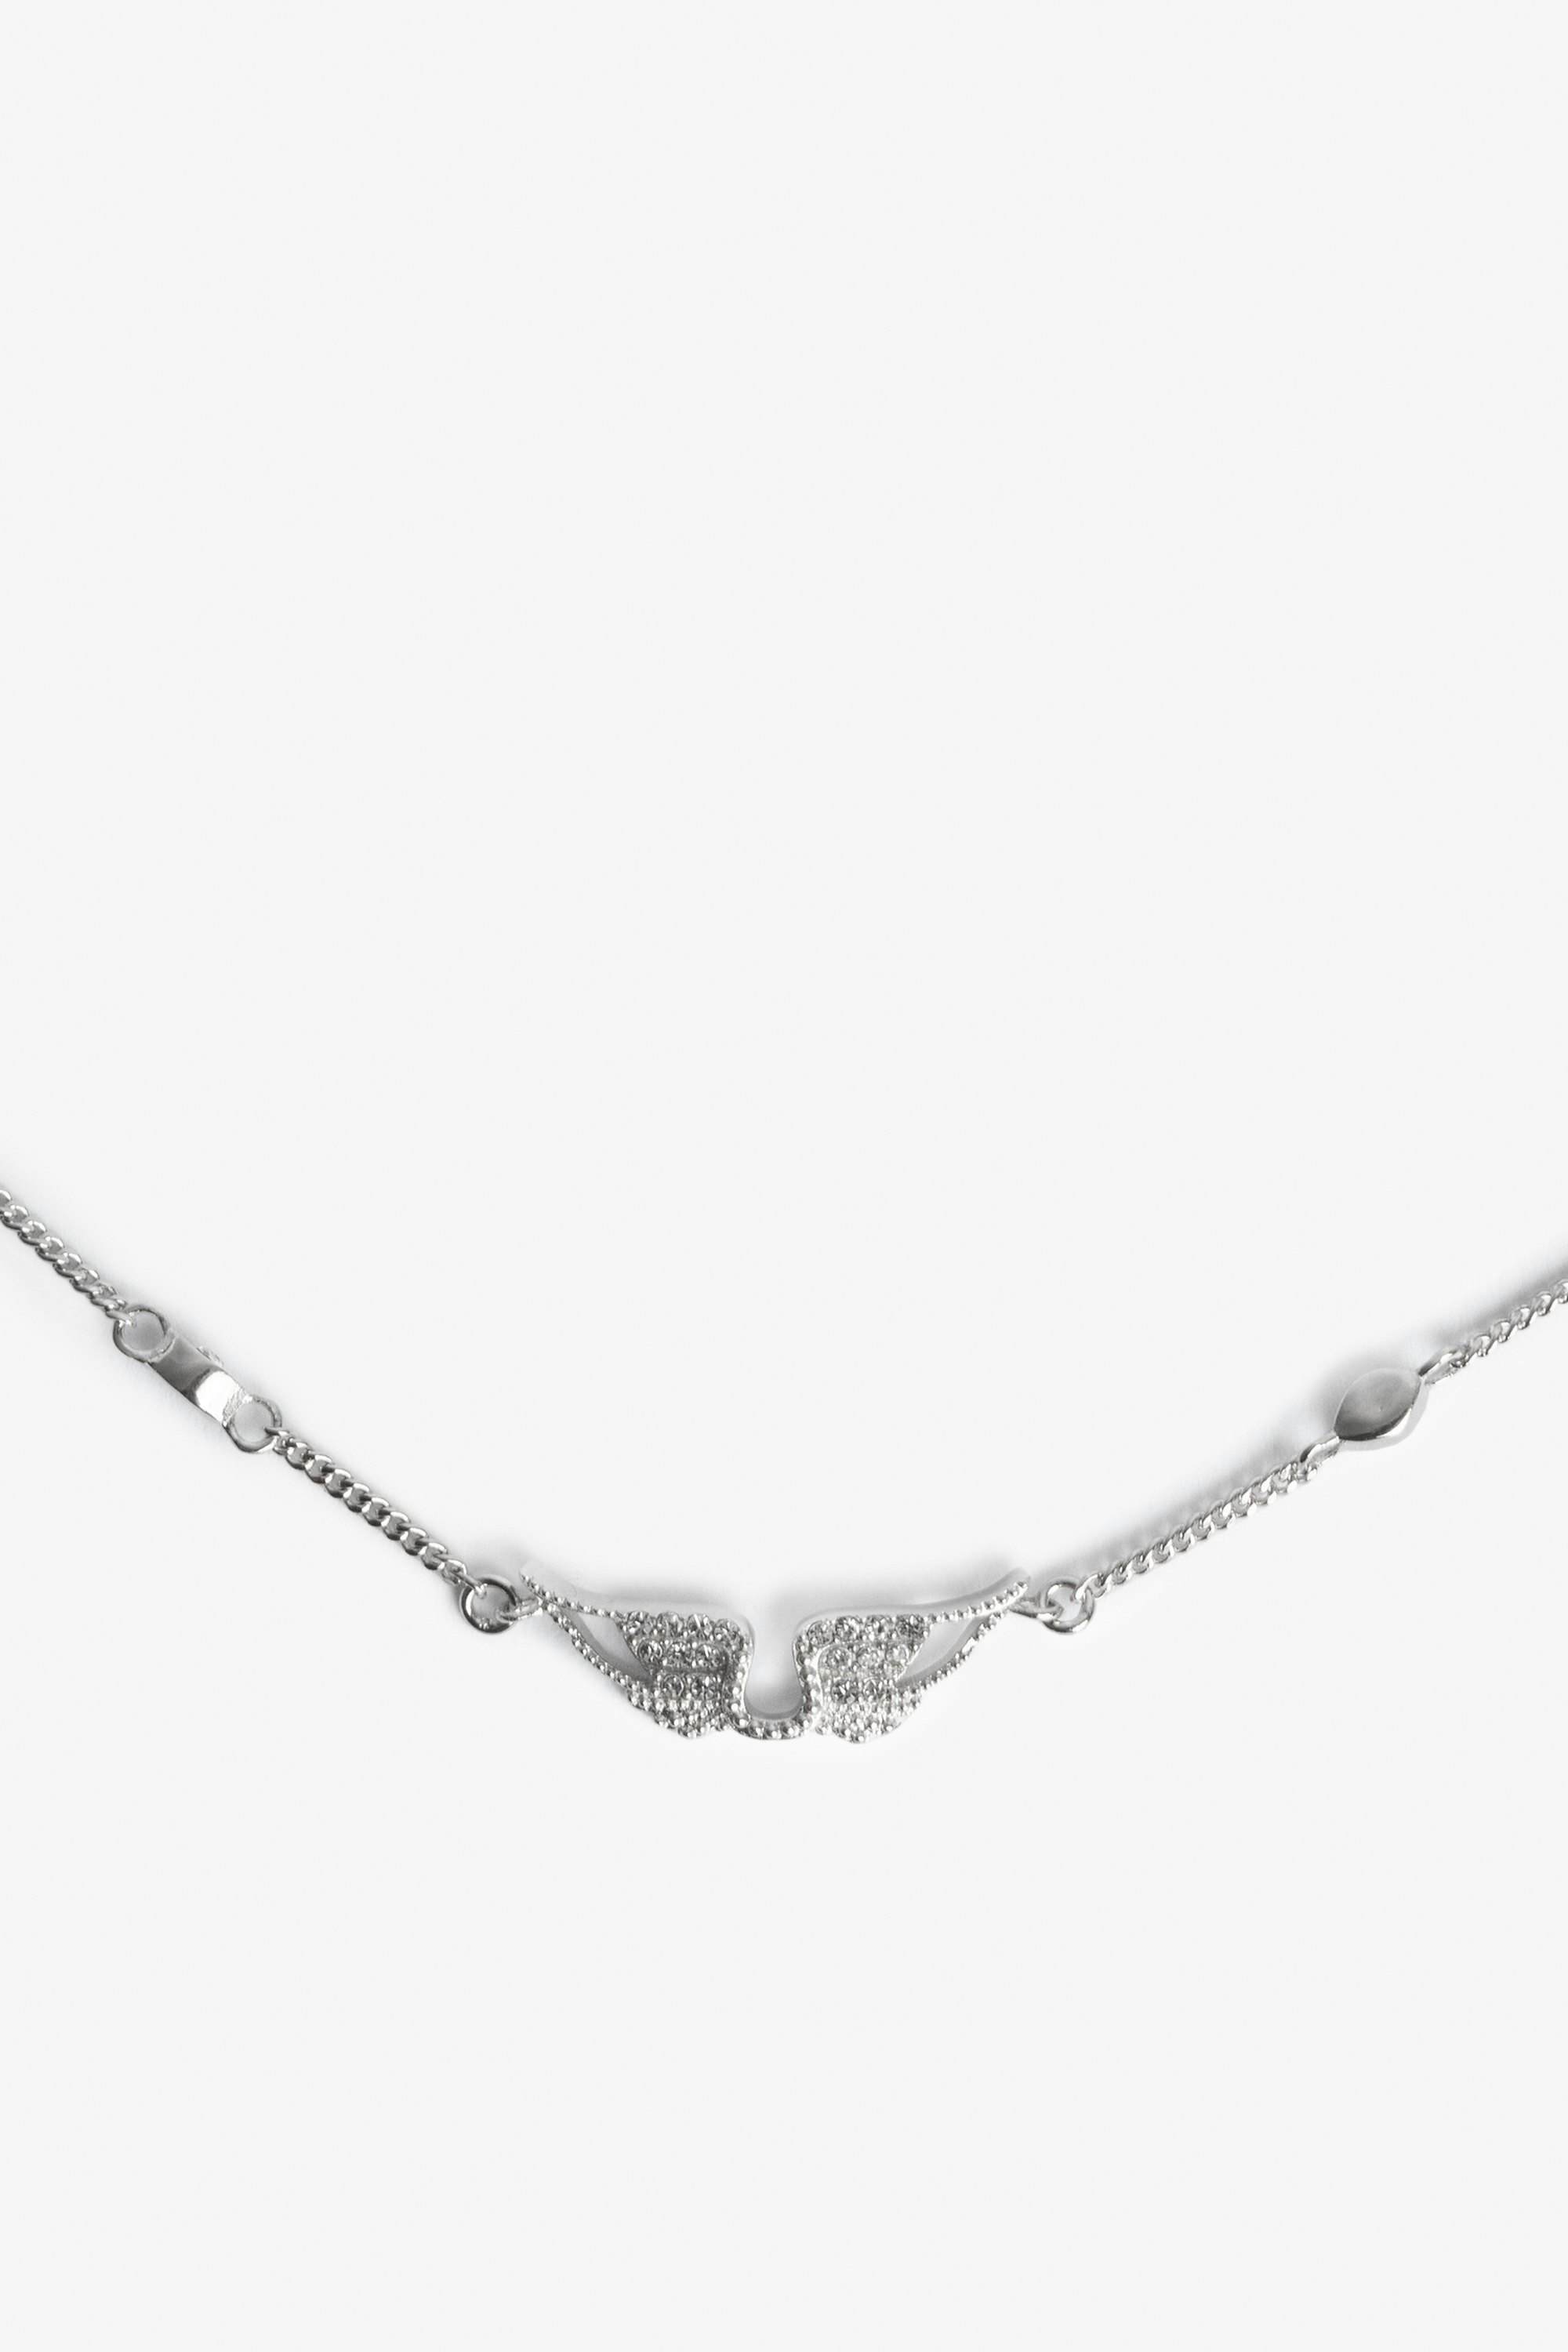 Halskette Rock Choker  - Halskette aus Messing mit schwarzen Strasssteinchen.